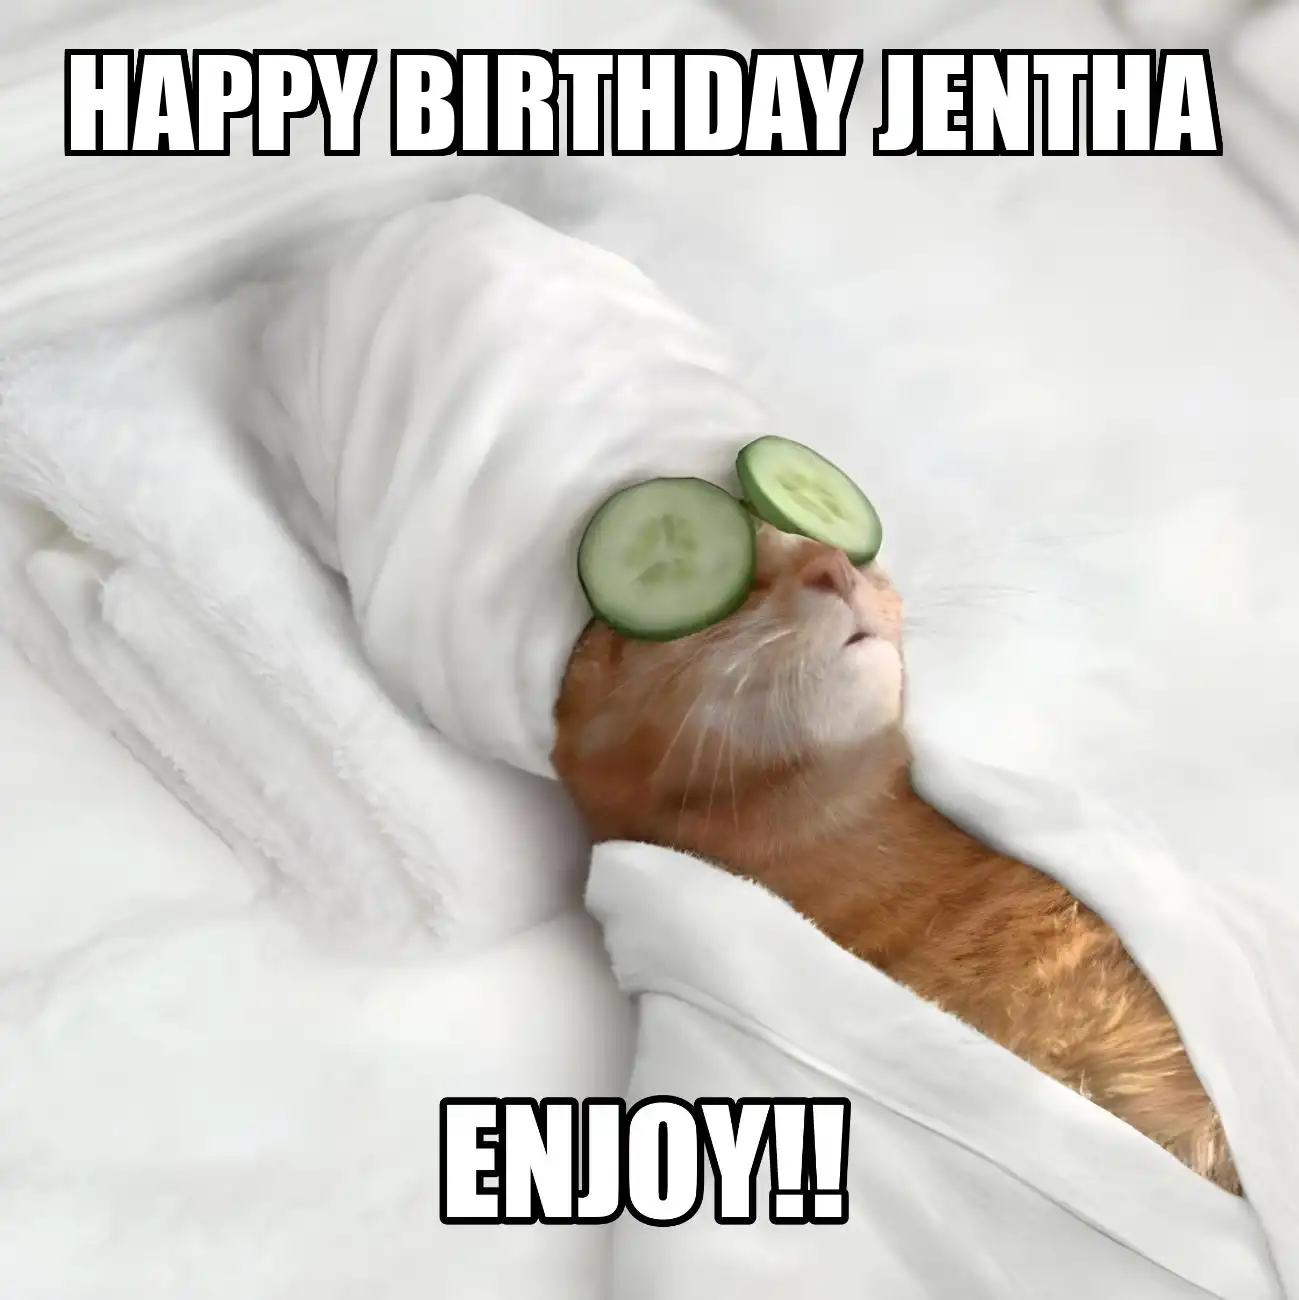 Happy Birthday Jentha Enjoy Cat Meme